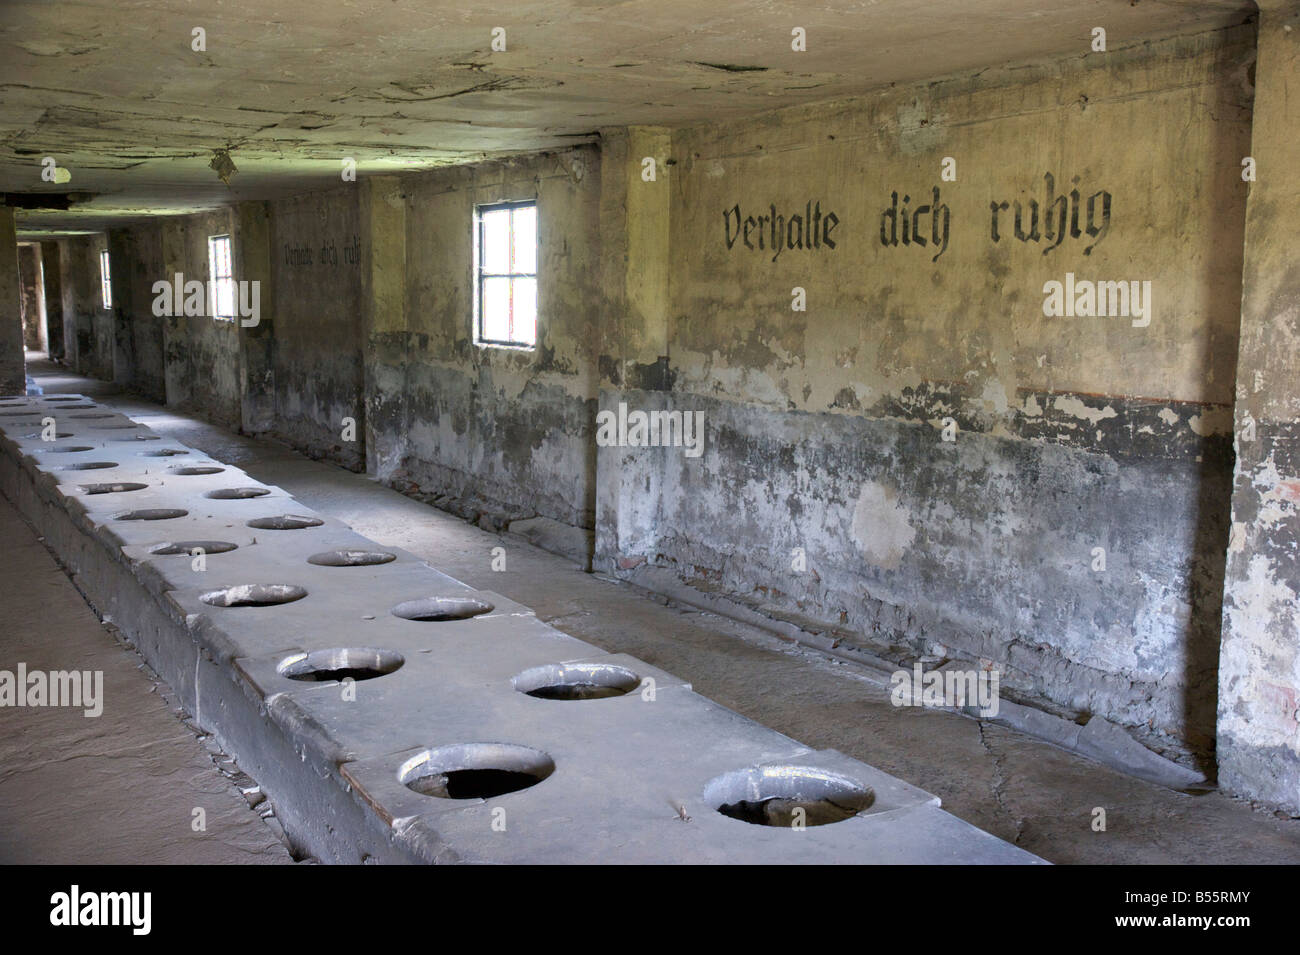 Messa wc barrack con iscrizione "Verhalte dich ruhig' nell'ex campo di concentramento di Auschwitz II (Birkenau) Foto Stock